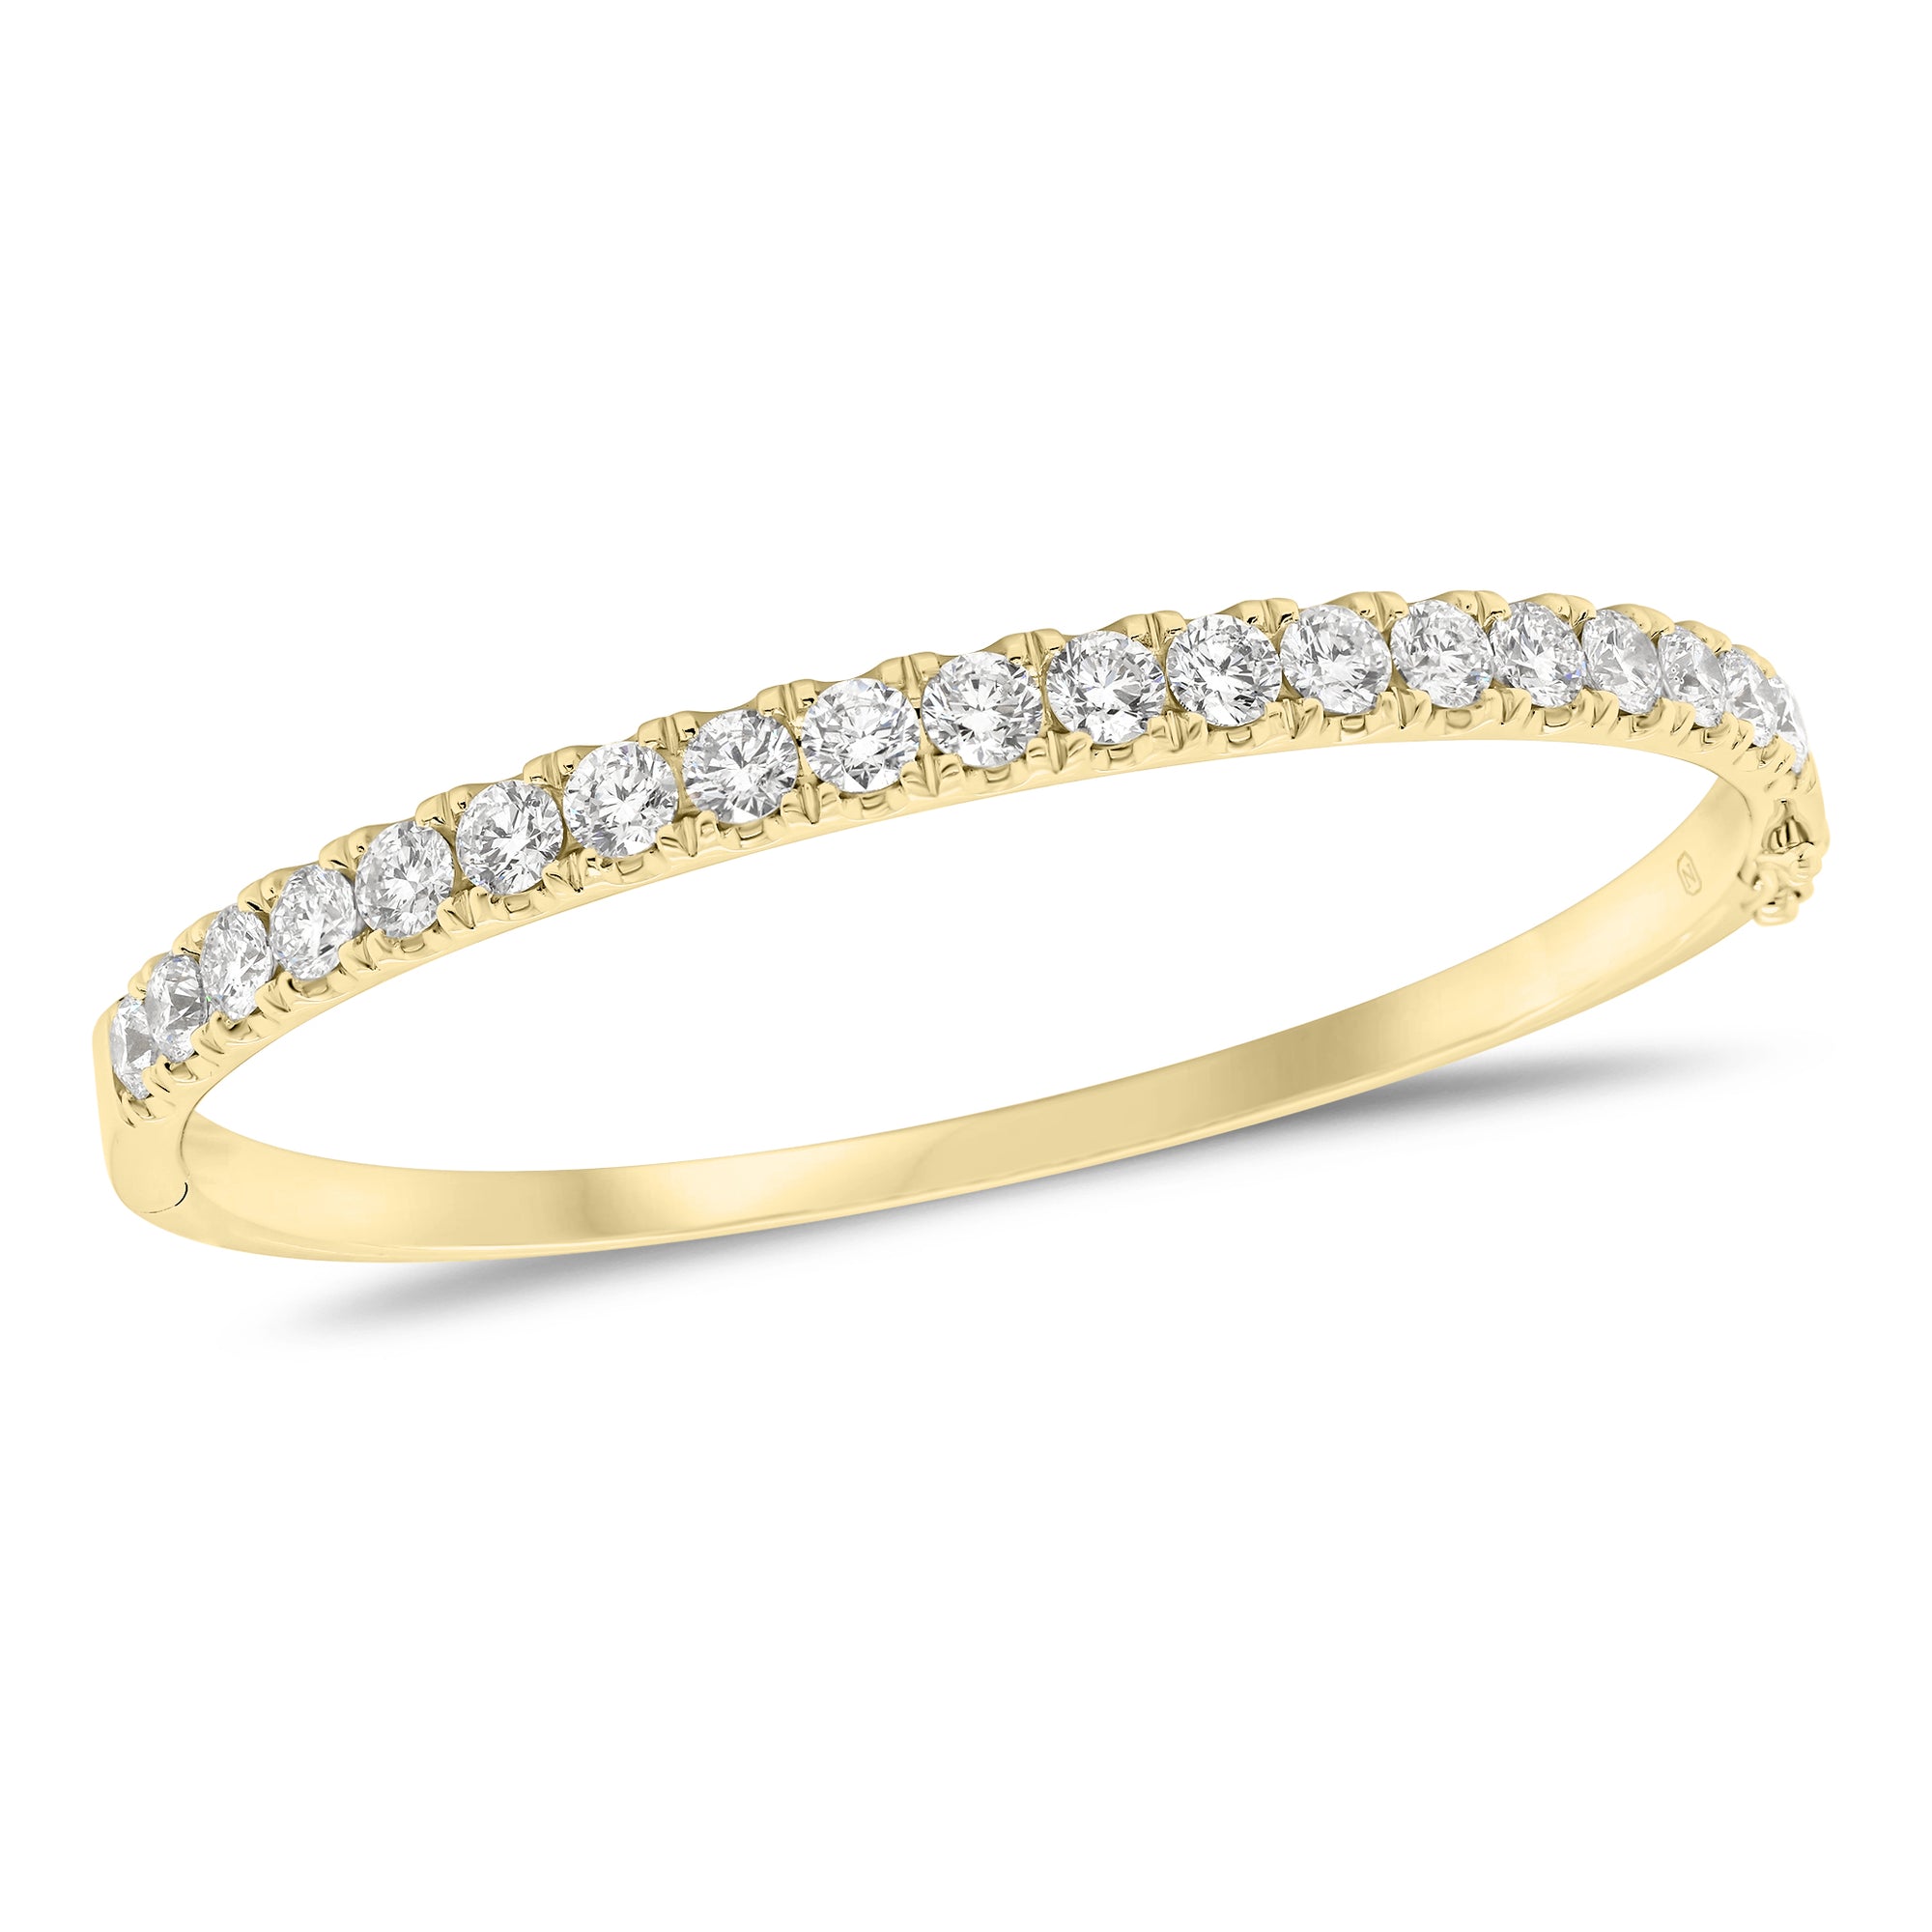 3.63 ct Diamond Bangle-- 18K gold weighing 21.66 grams  - 19 round diamonds weighing 3.63 carats